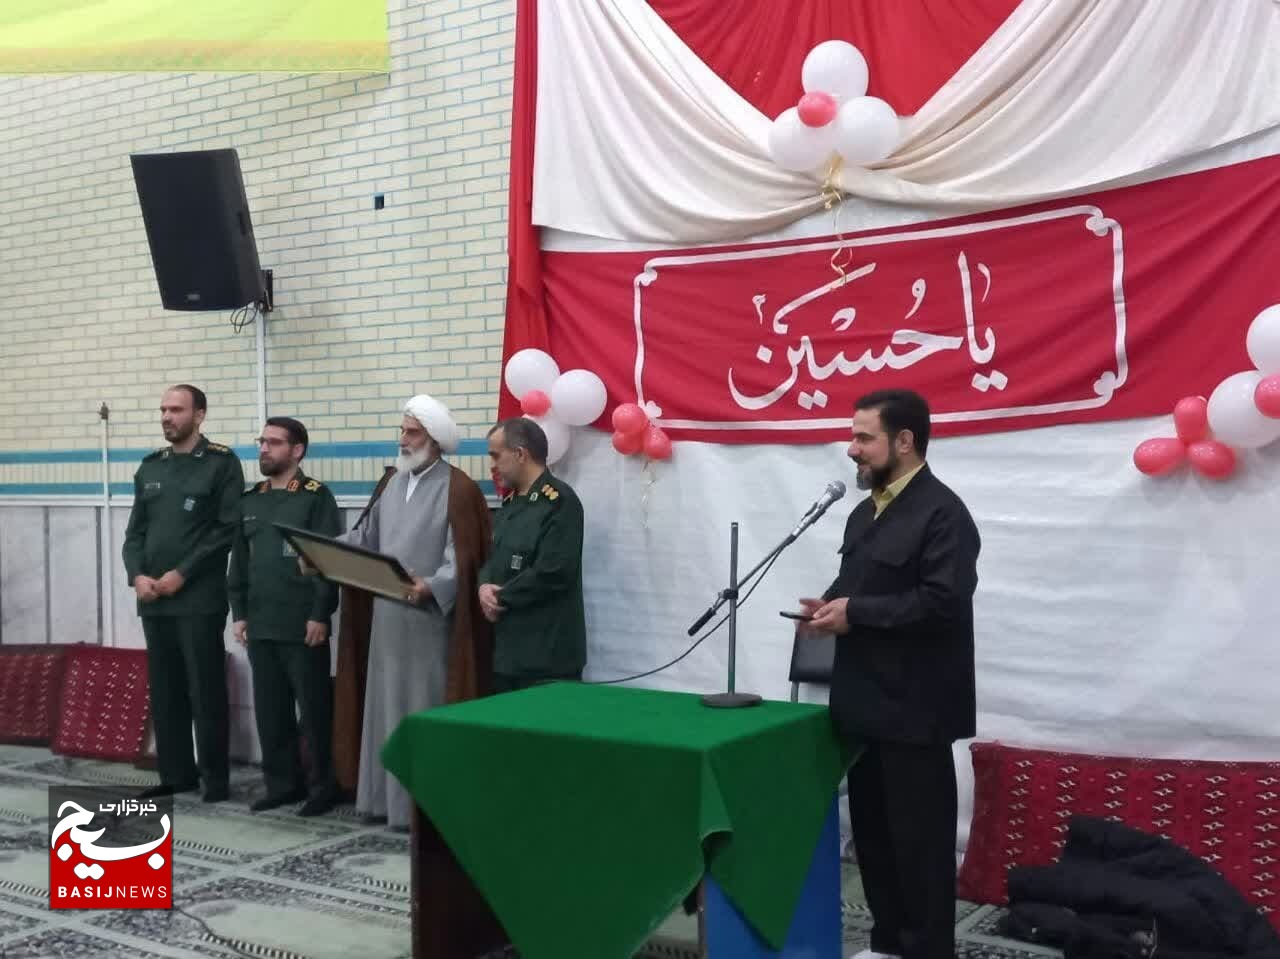  جشن اعیاد شعبانیه و روز  پاسدار در شهرک صادقیه  قم برگزار شد